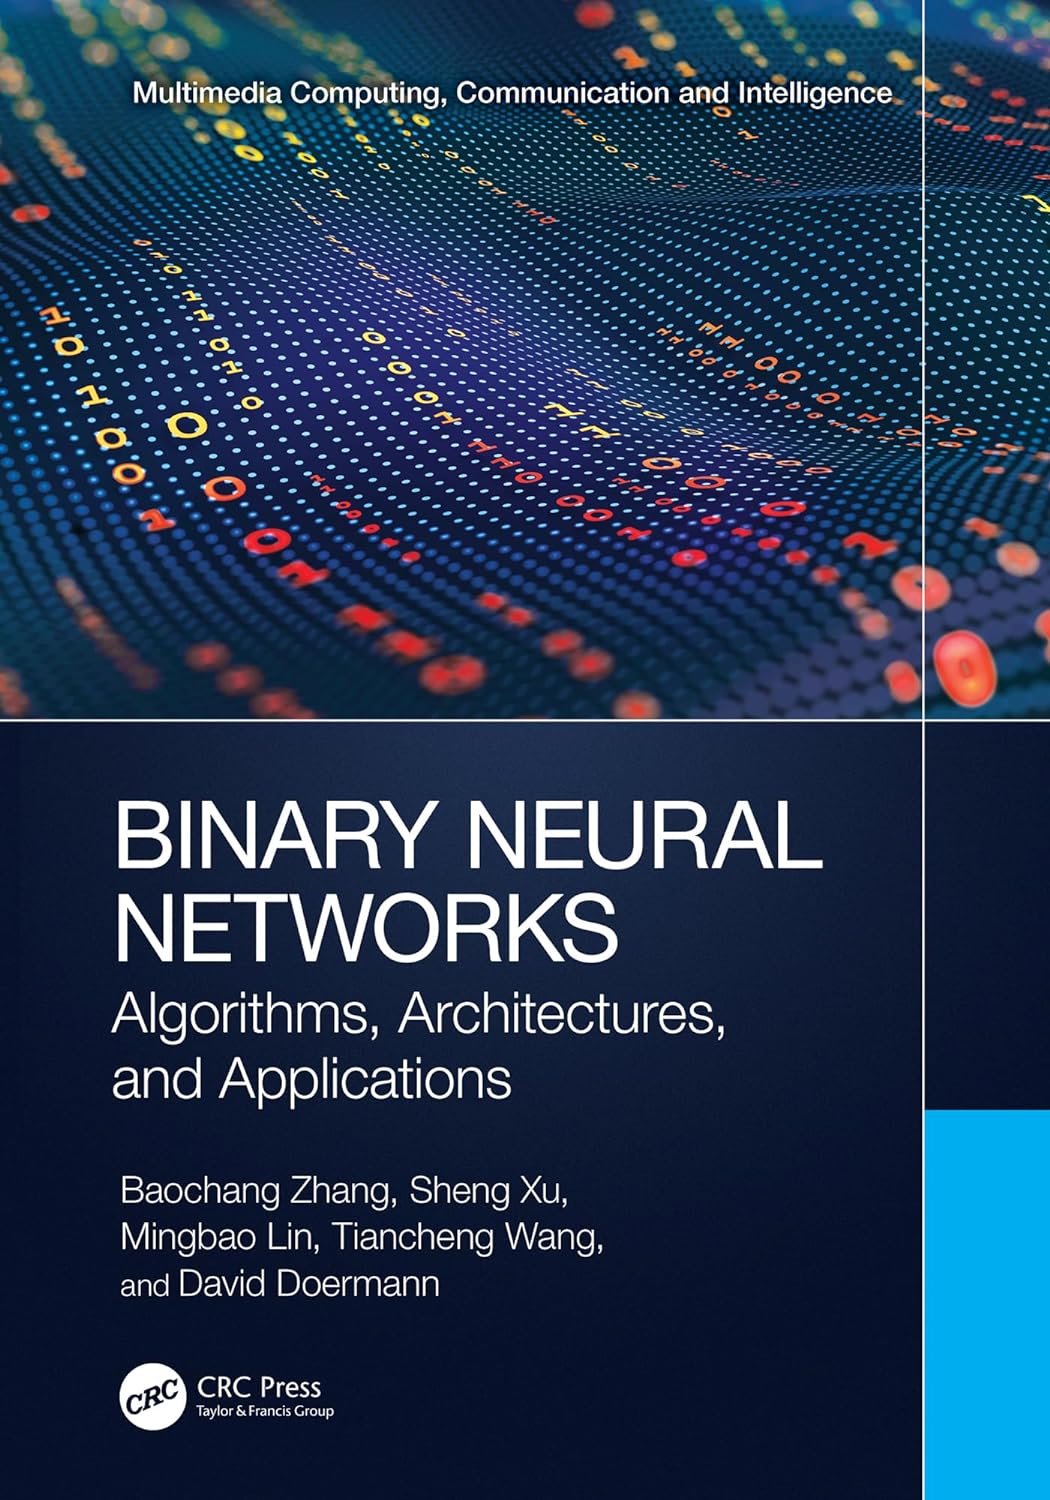 (EBook PDF)Binary Neural Networks: Algorithms, Architectures, and Applications by Baochang Zhang, Sheng Xu, Mingbao Lin, Tiancheng Wang, David Doermann